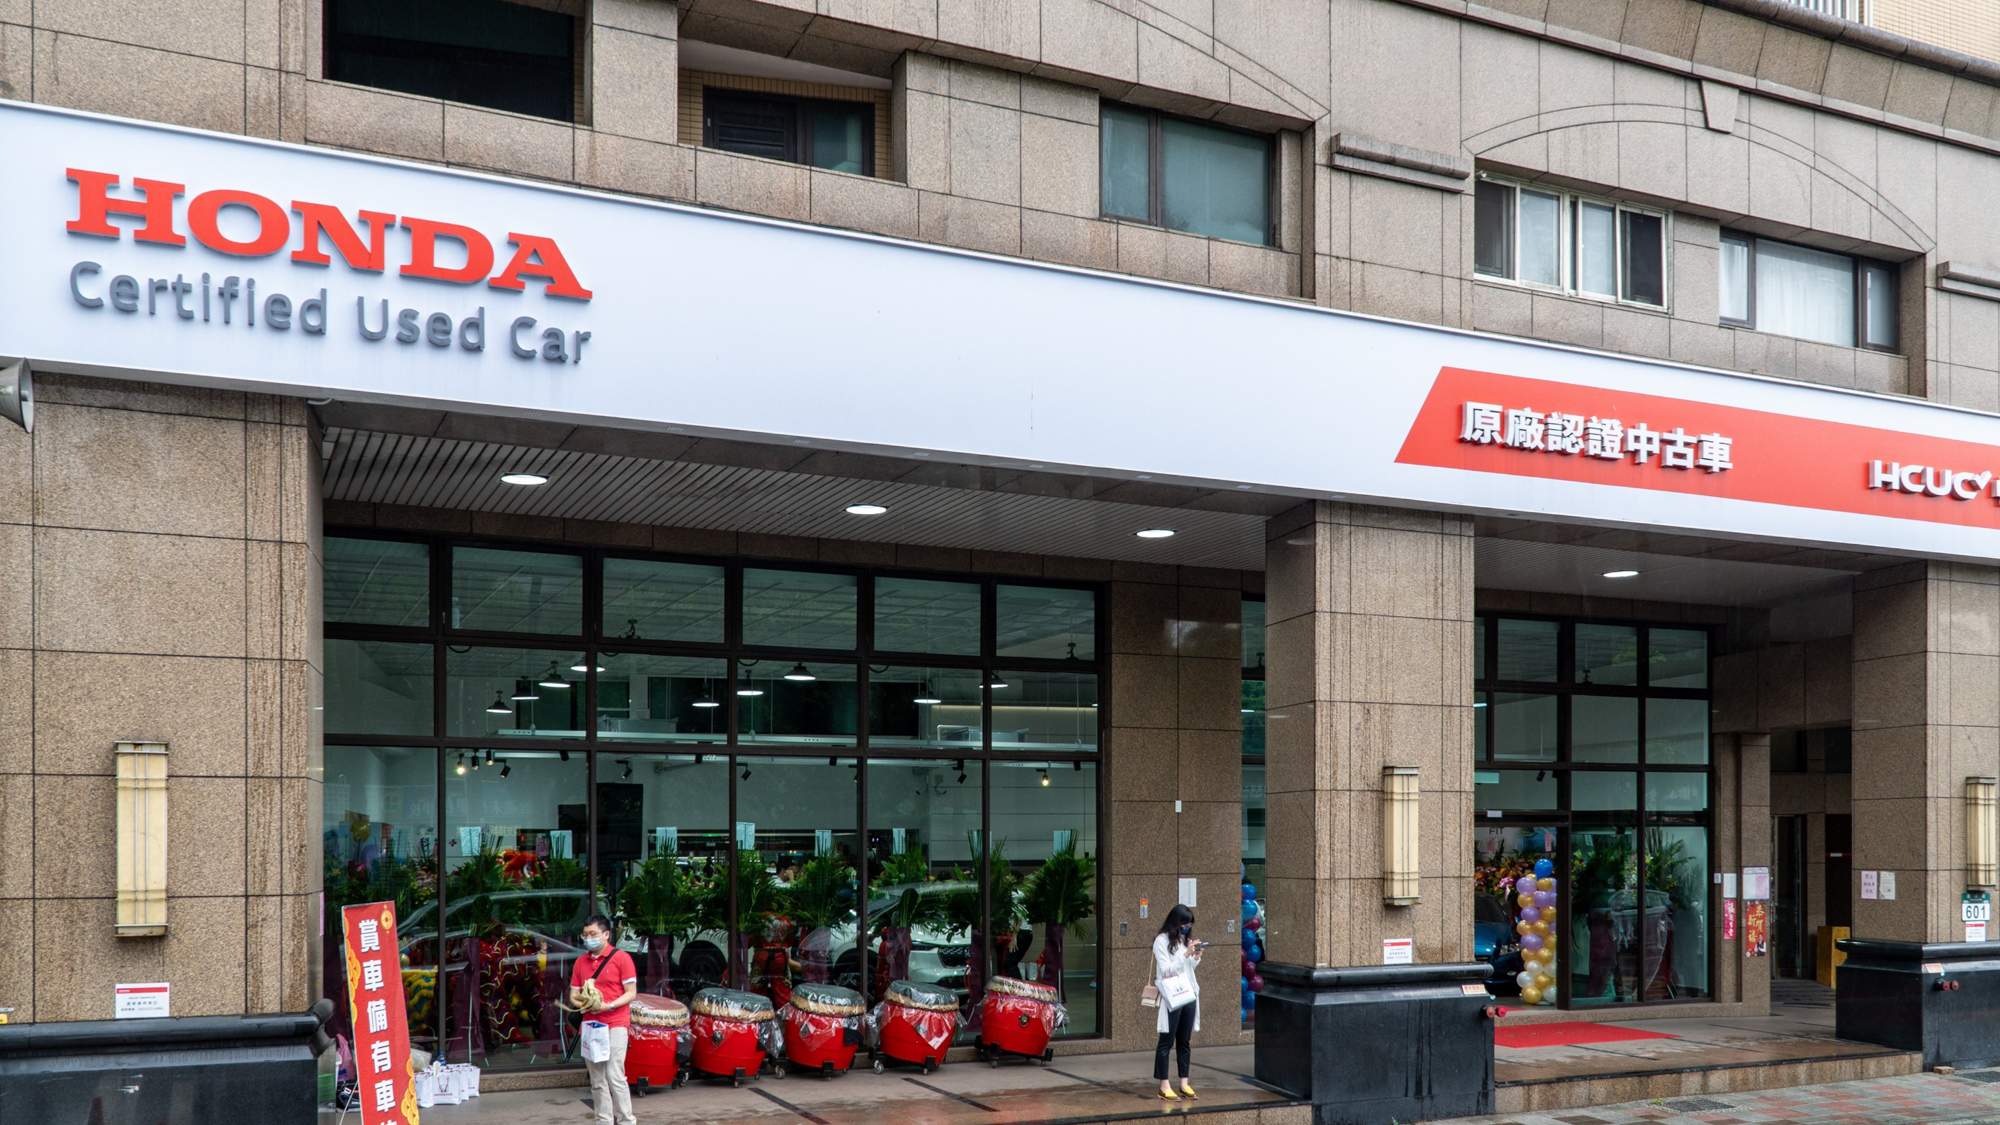 Honda Certified Used Car 新北市首家據點開幕